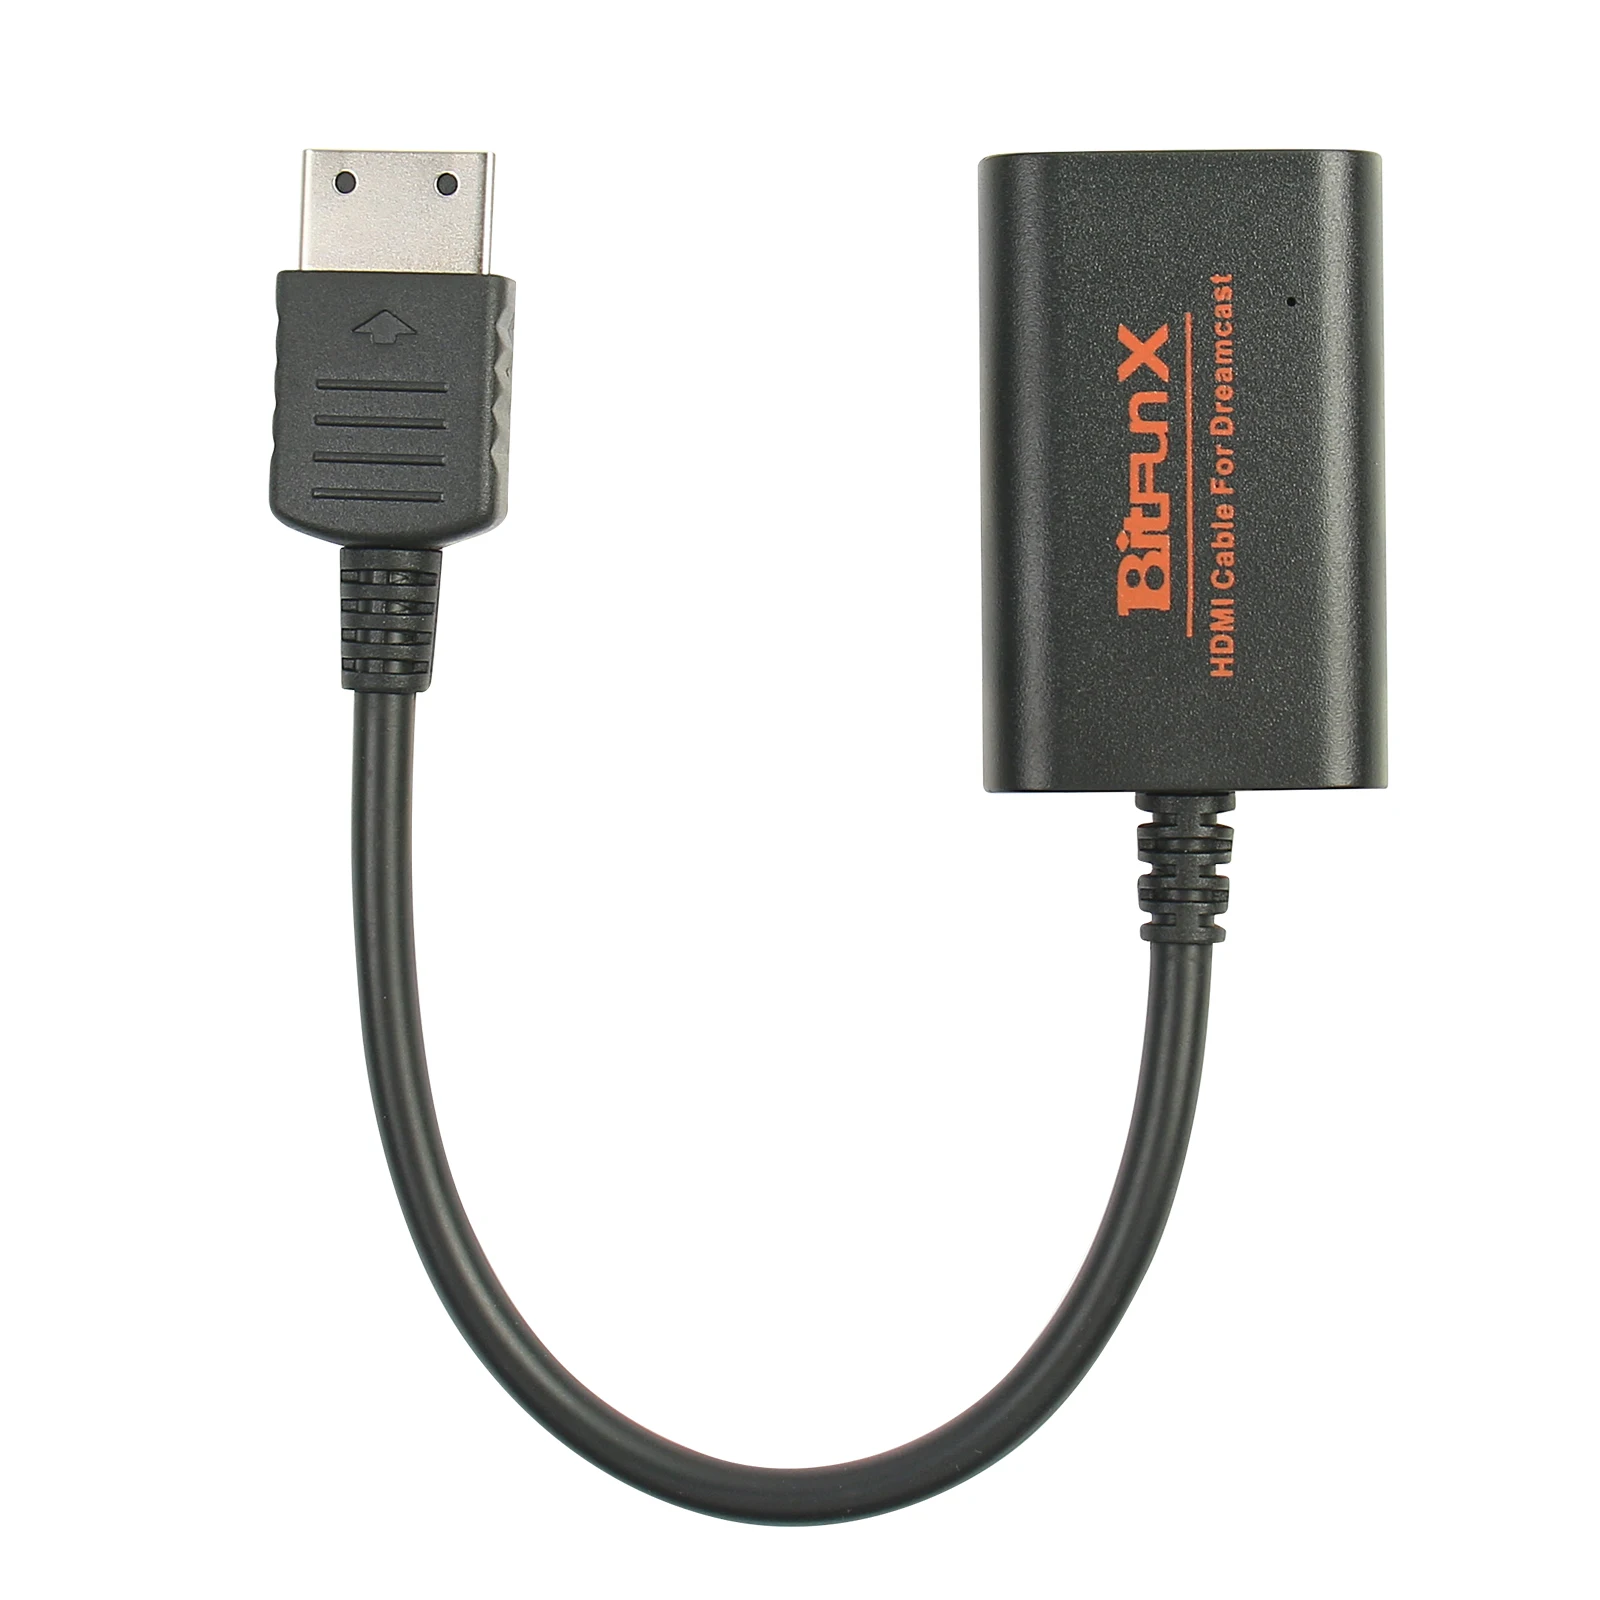 HDMI-Adapter til Sega Dreamcast Spillekonsoller HDMI/HD-Link Kabler High Definition Link Kabel Ledning til Sega Dreamcast 0